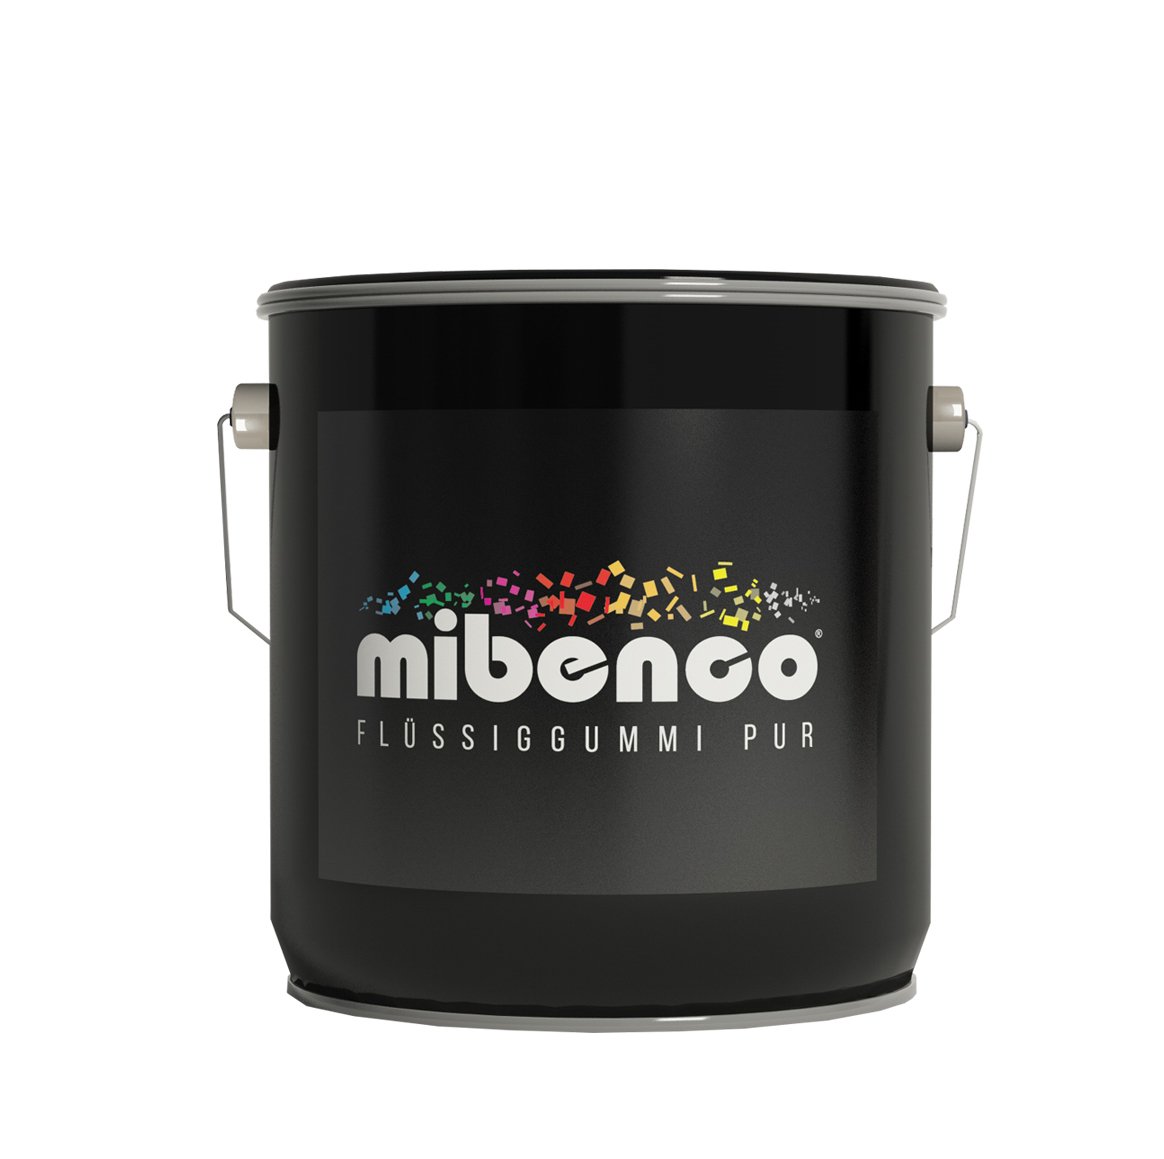 mibenco 72319010 Flüssiggummi Pur, 3000 g, Weiß Glänzend - Schutz und Isolation zum Tauchen und Pinseln